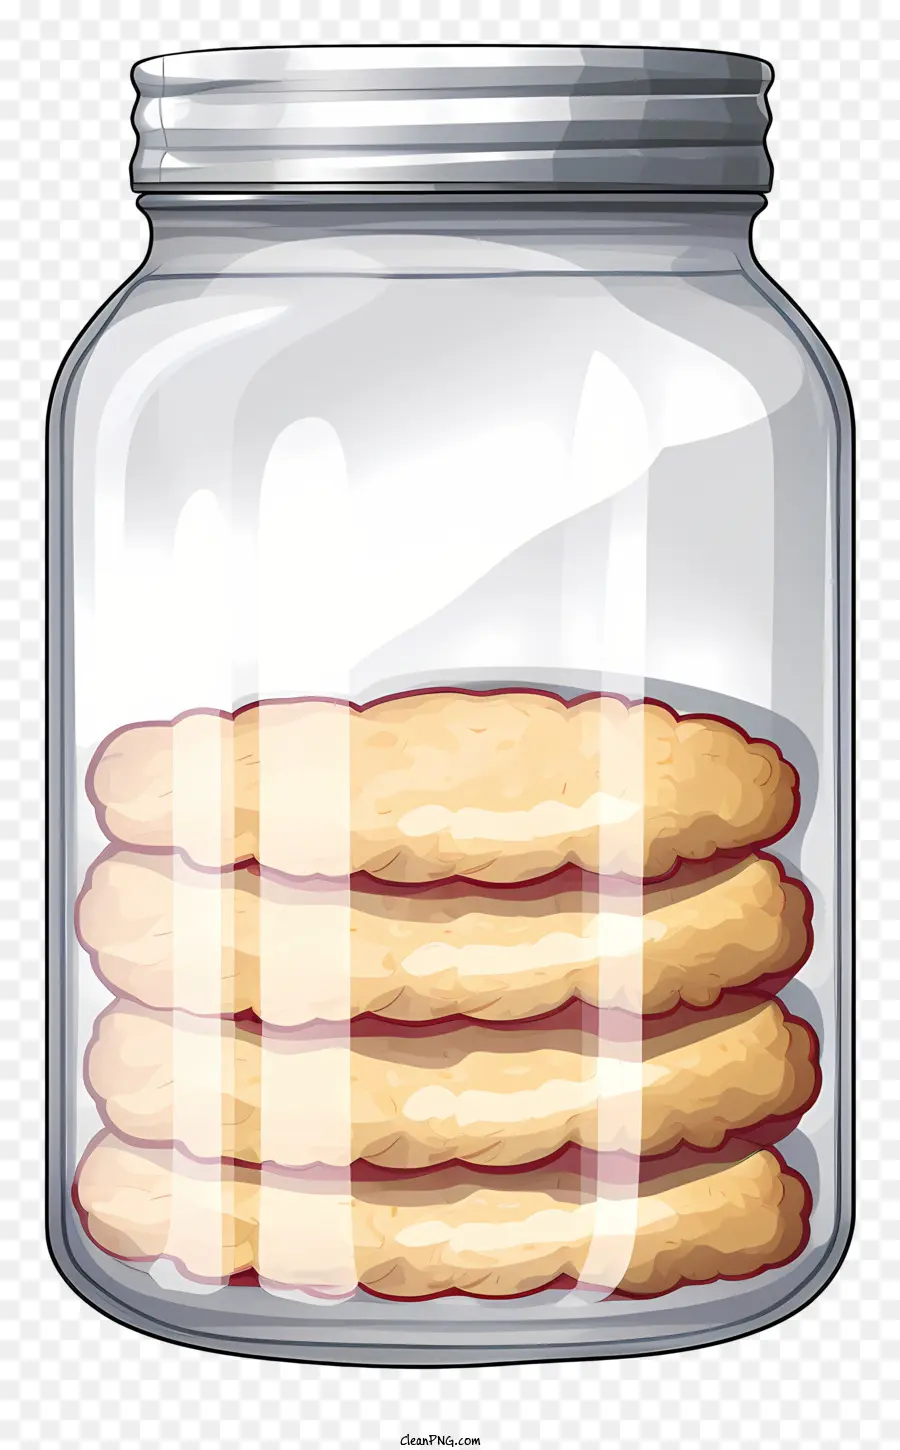 glass jar sliced cookies bakery stack of cookies rectangle cookies